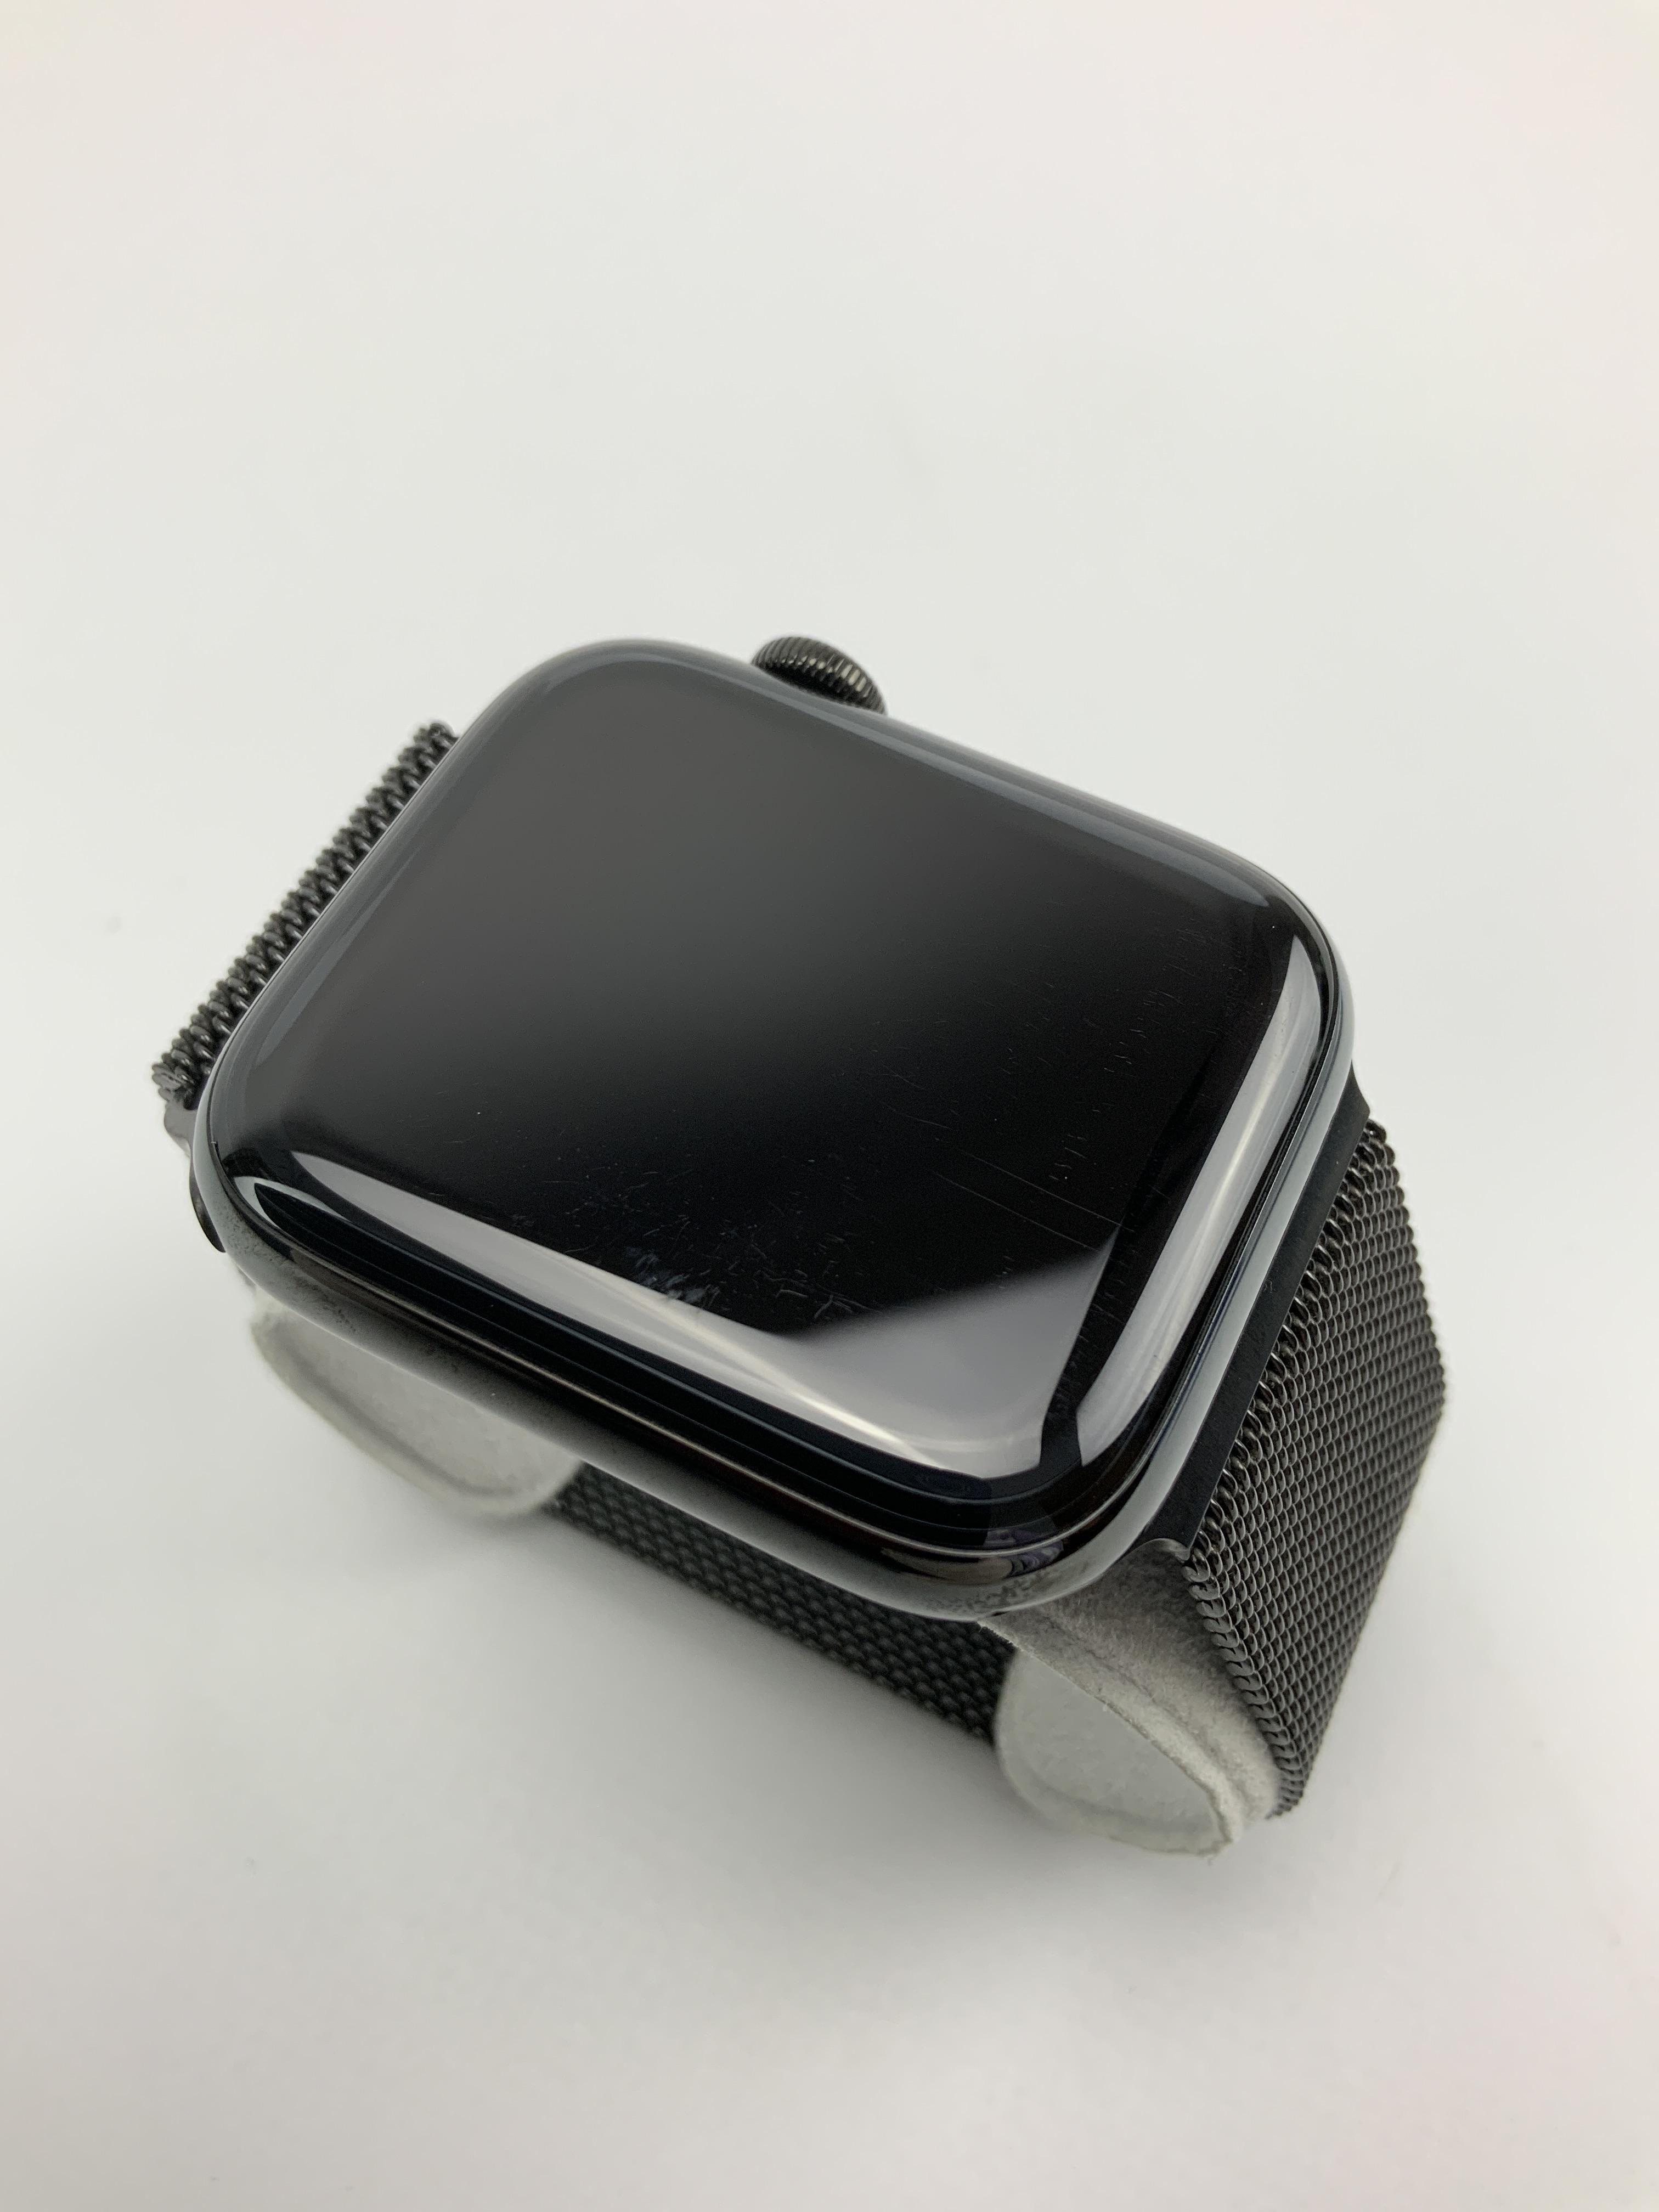 Watch Series 5 Steel Cellular (44mm), Space Black, Afbeelding 3